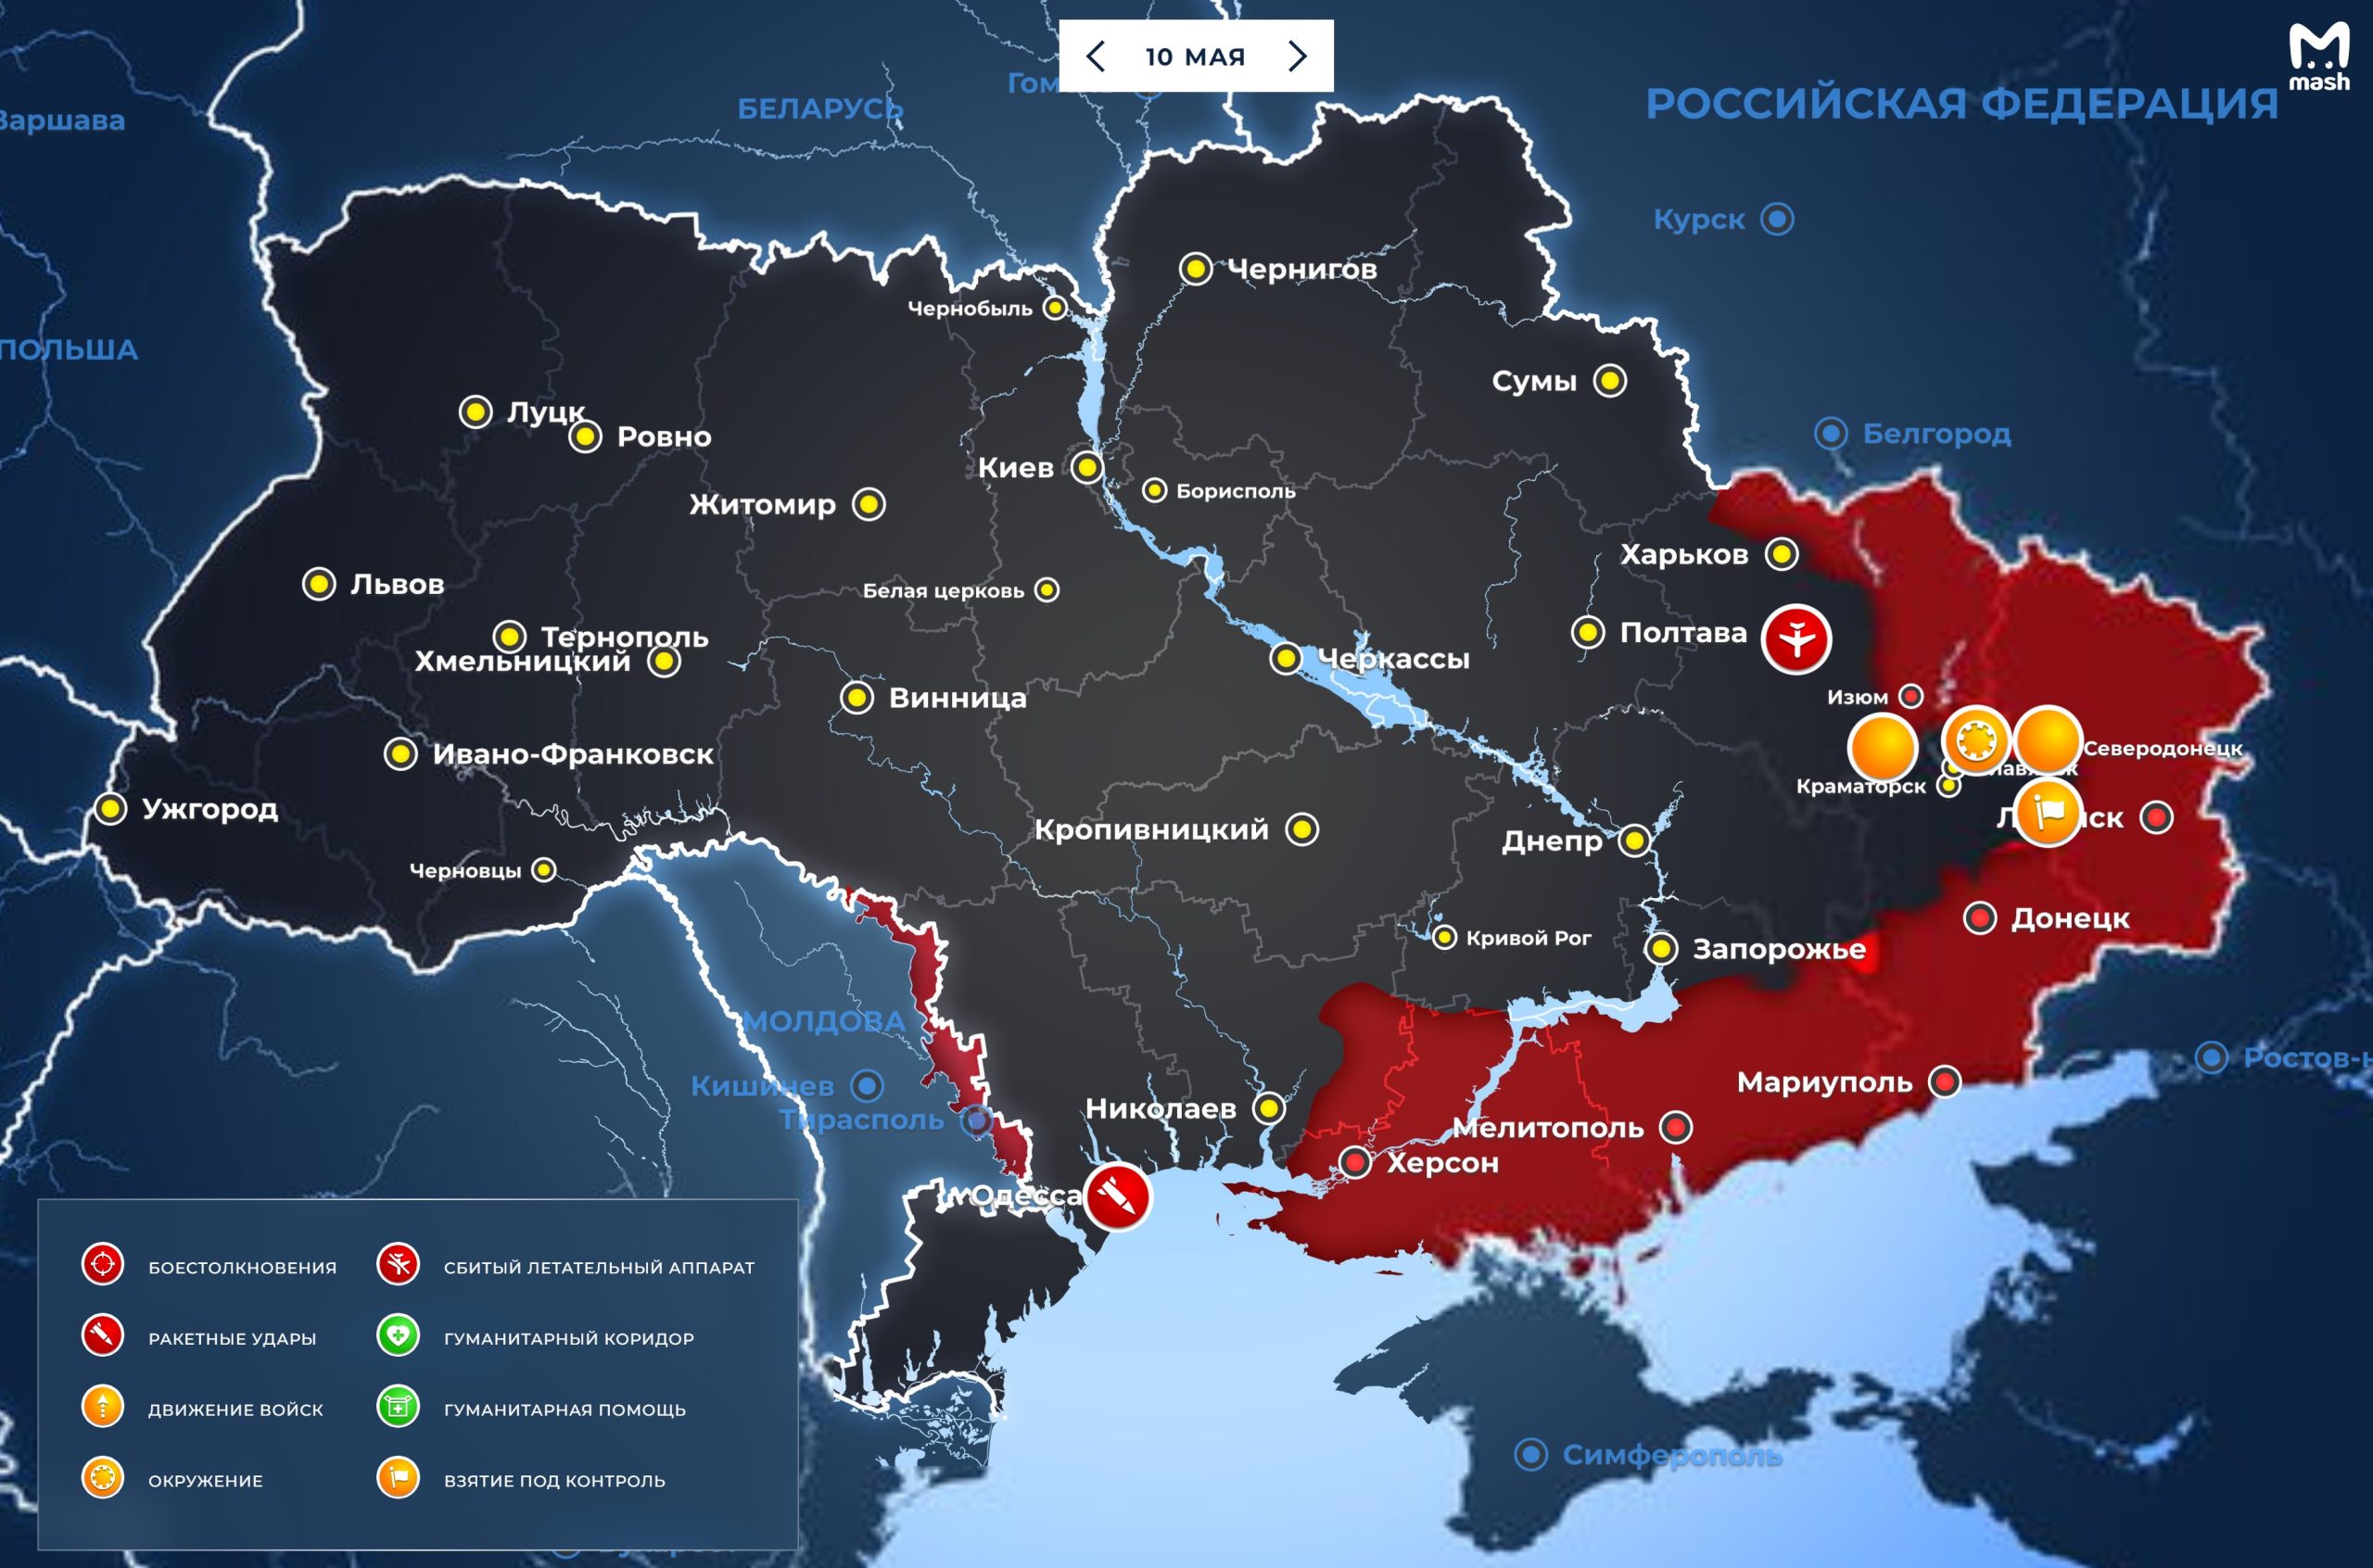 ВСУ бегут из Лисичанска бросая позиции: новости военной спецоперации на Украине на сегодня, 10 мая